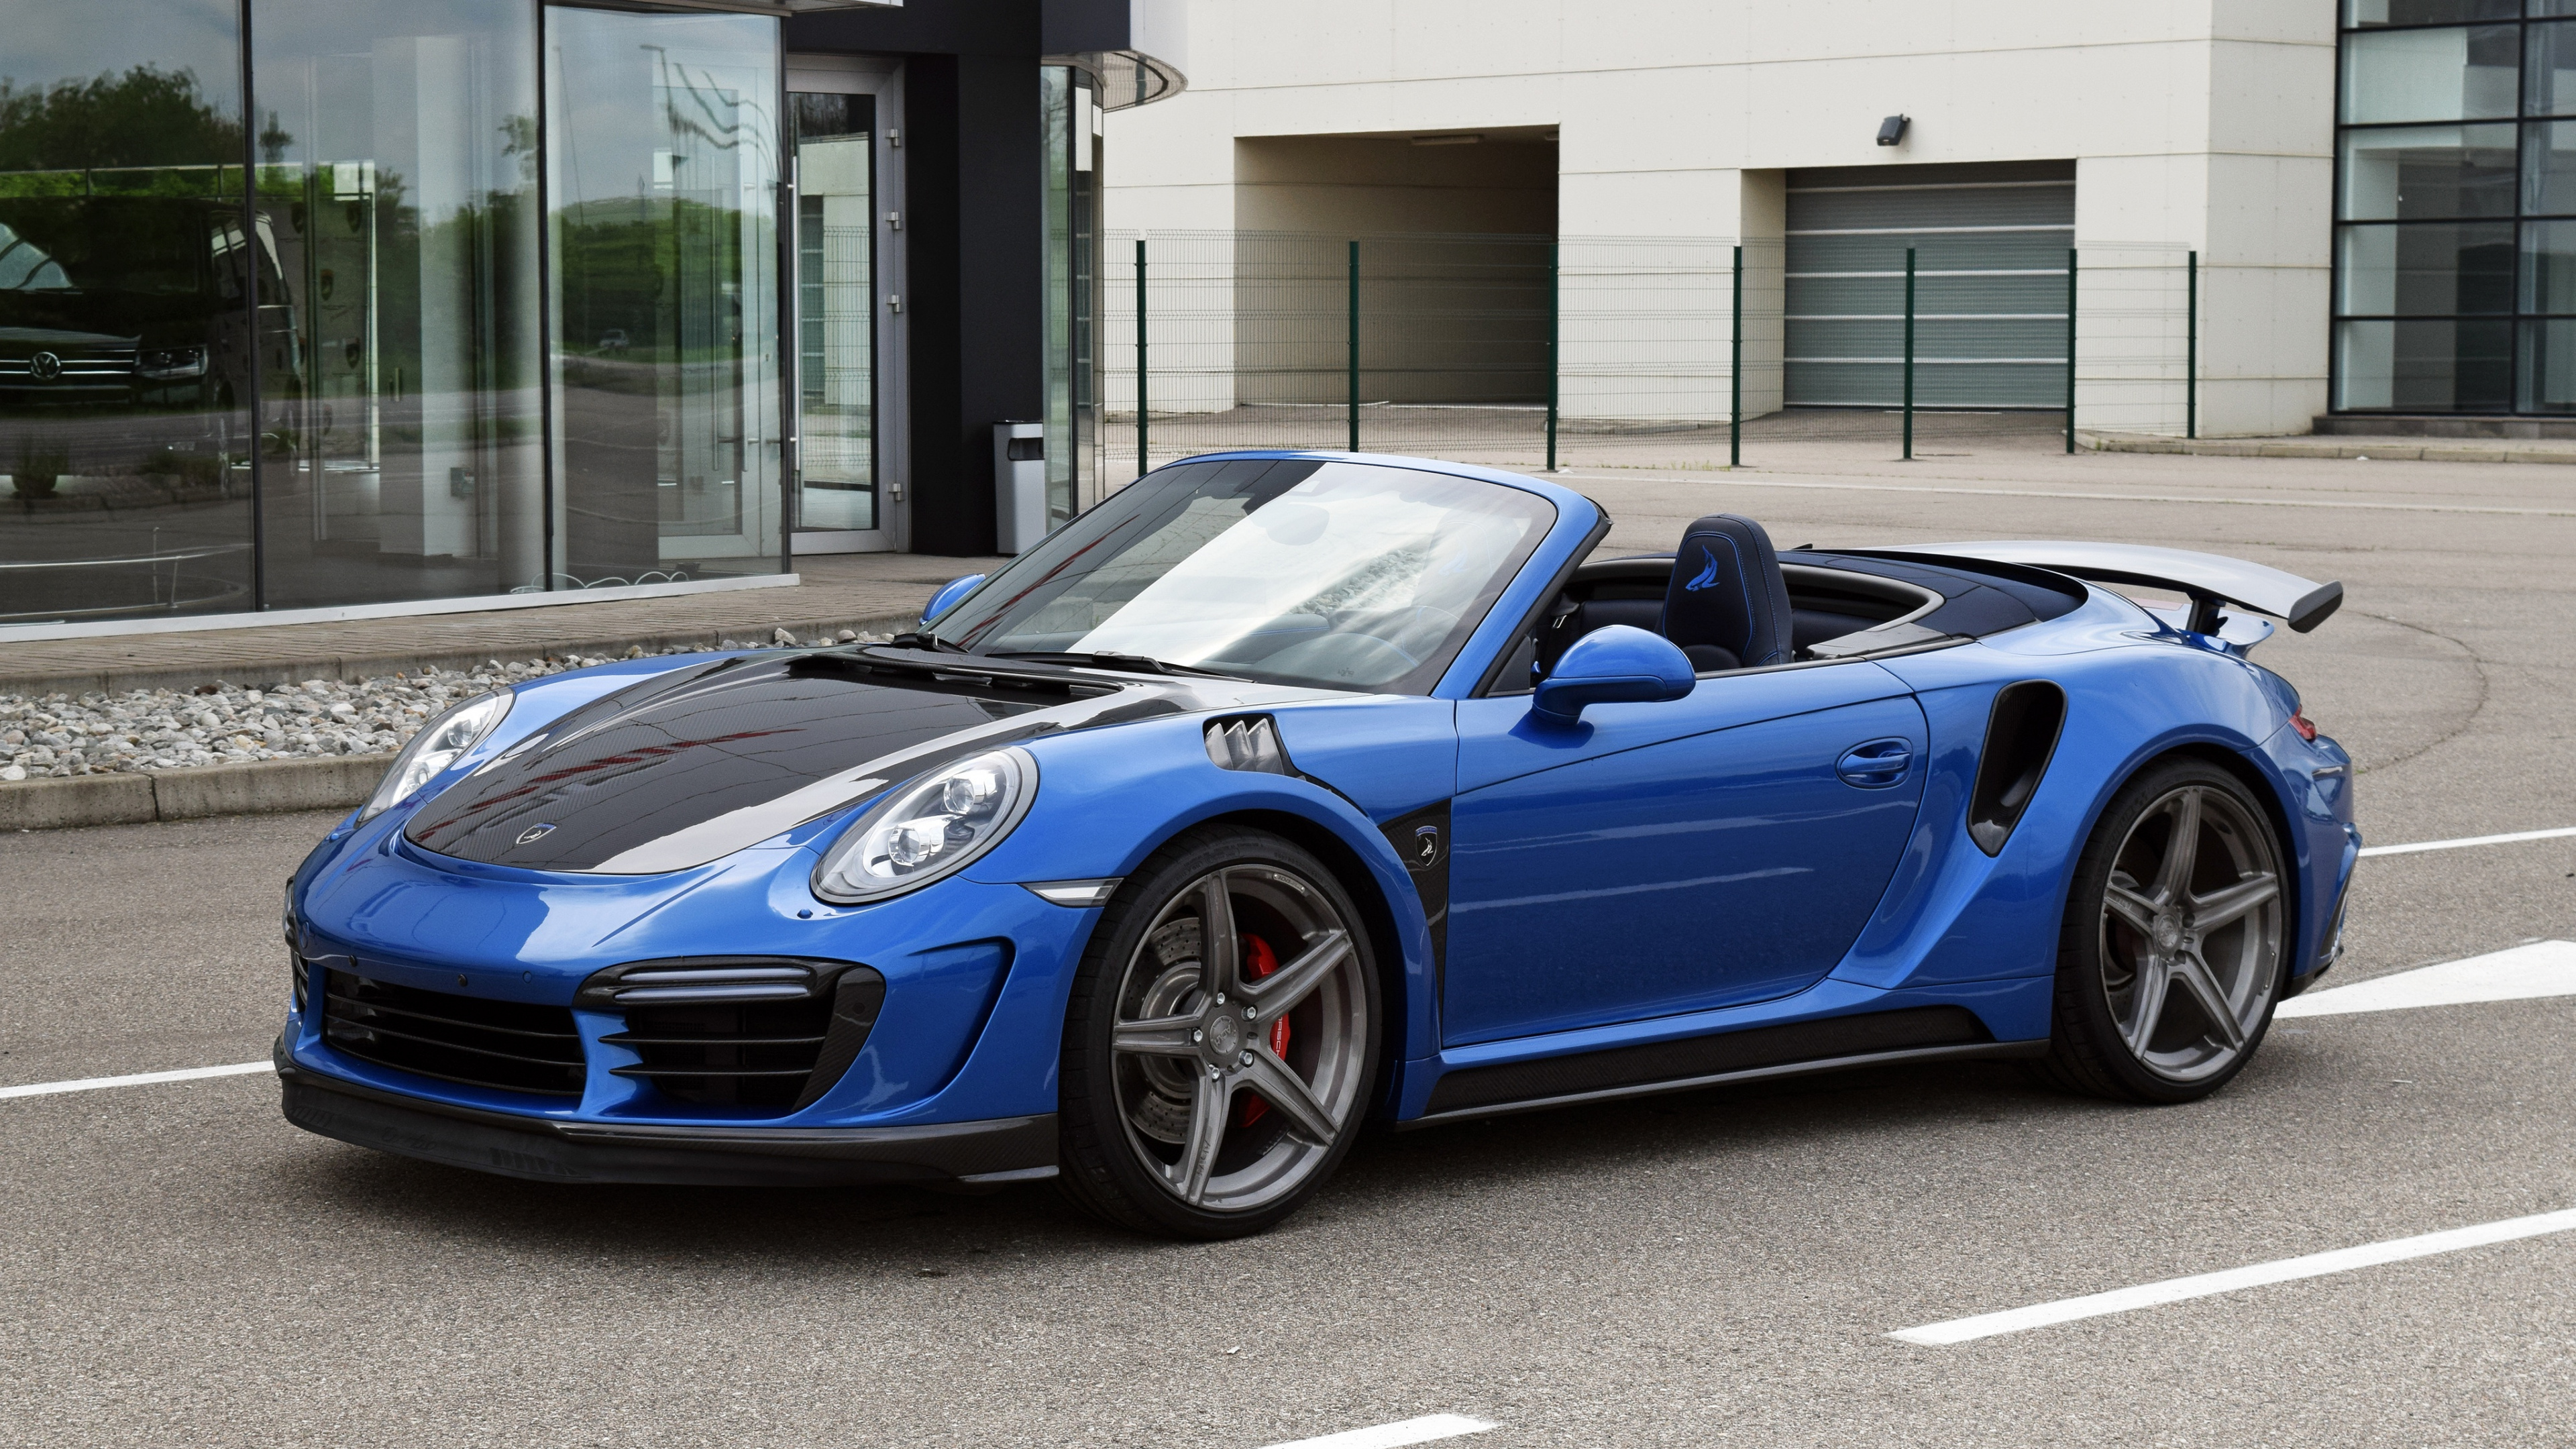 Blue Porsche 911 Parked Near Building During Daytime. Wallpaper in 3840x2160 Resolution